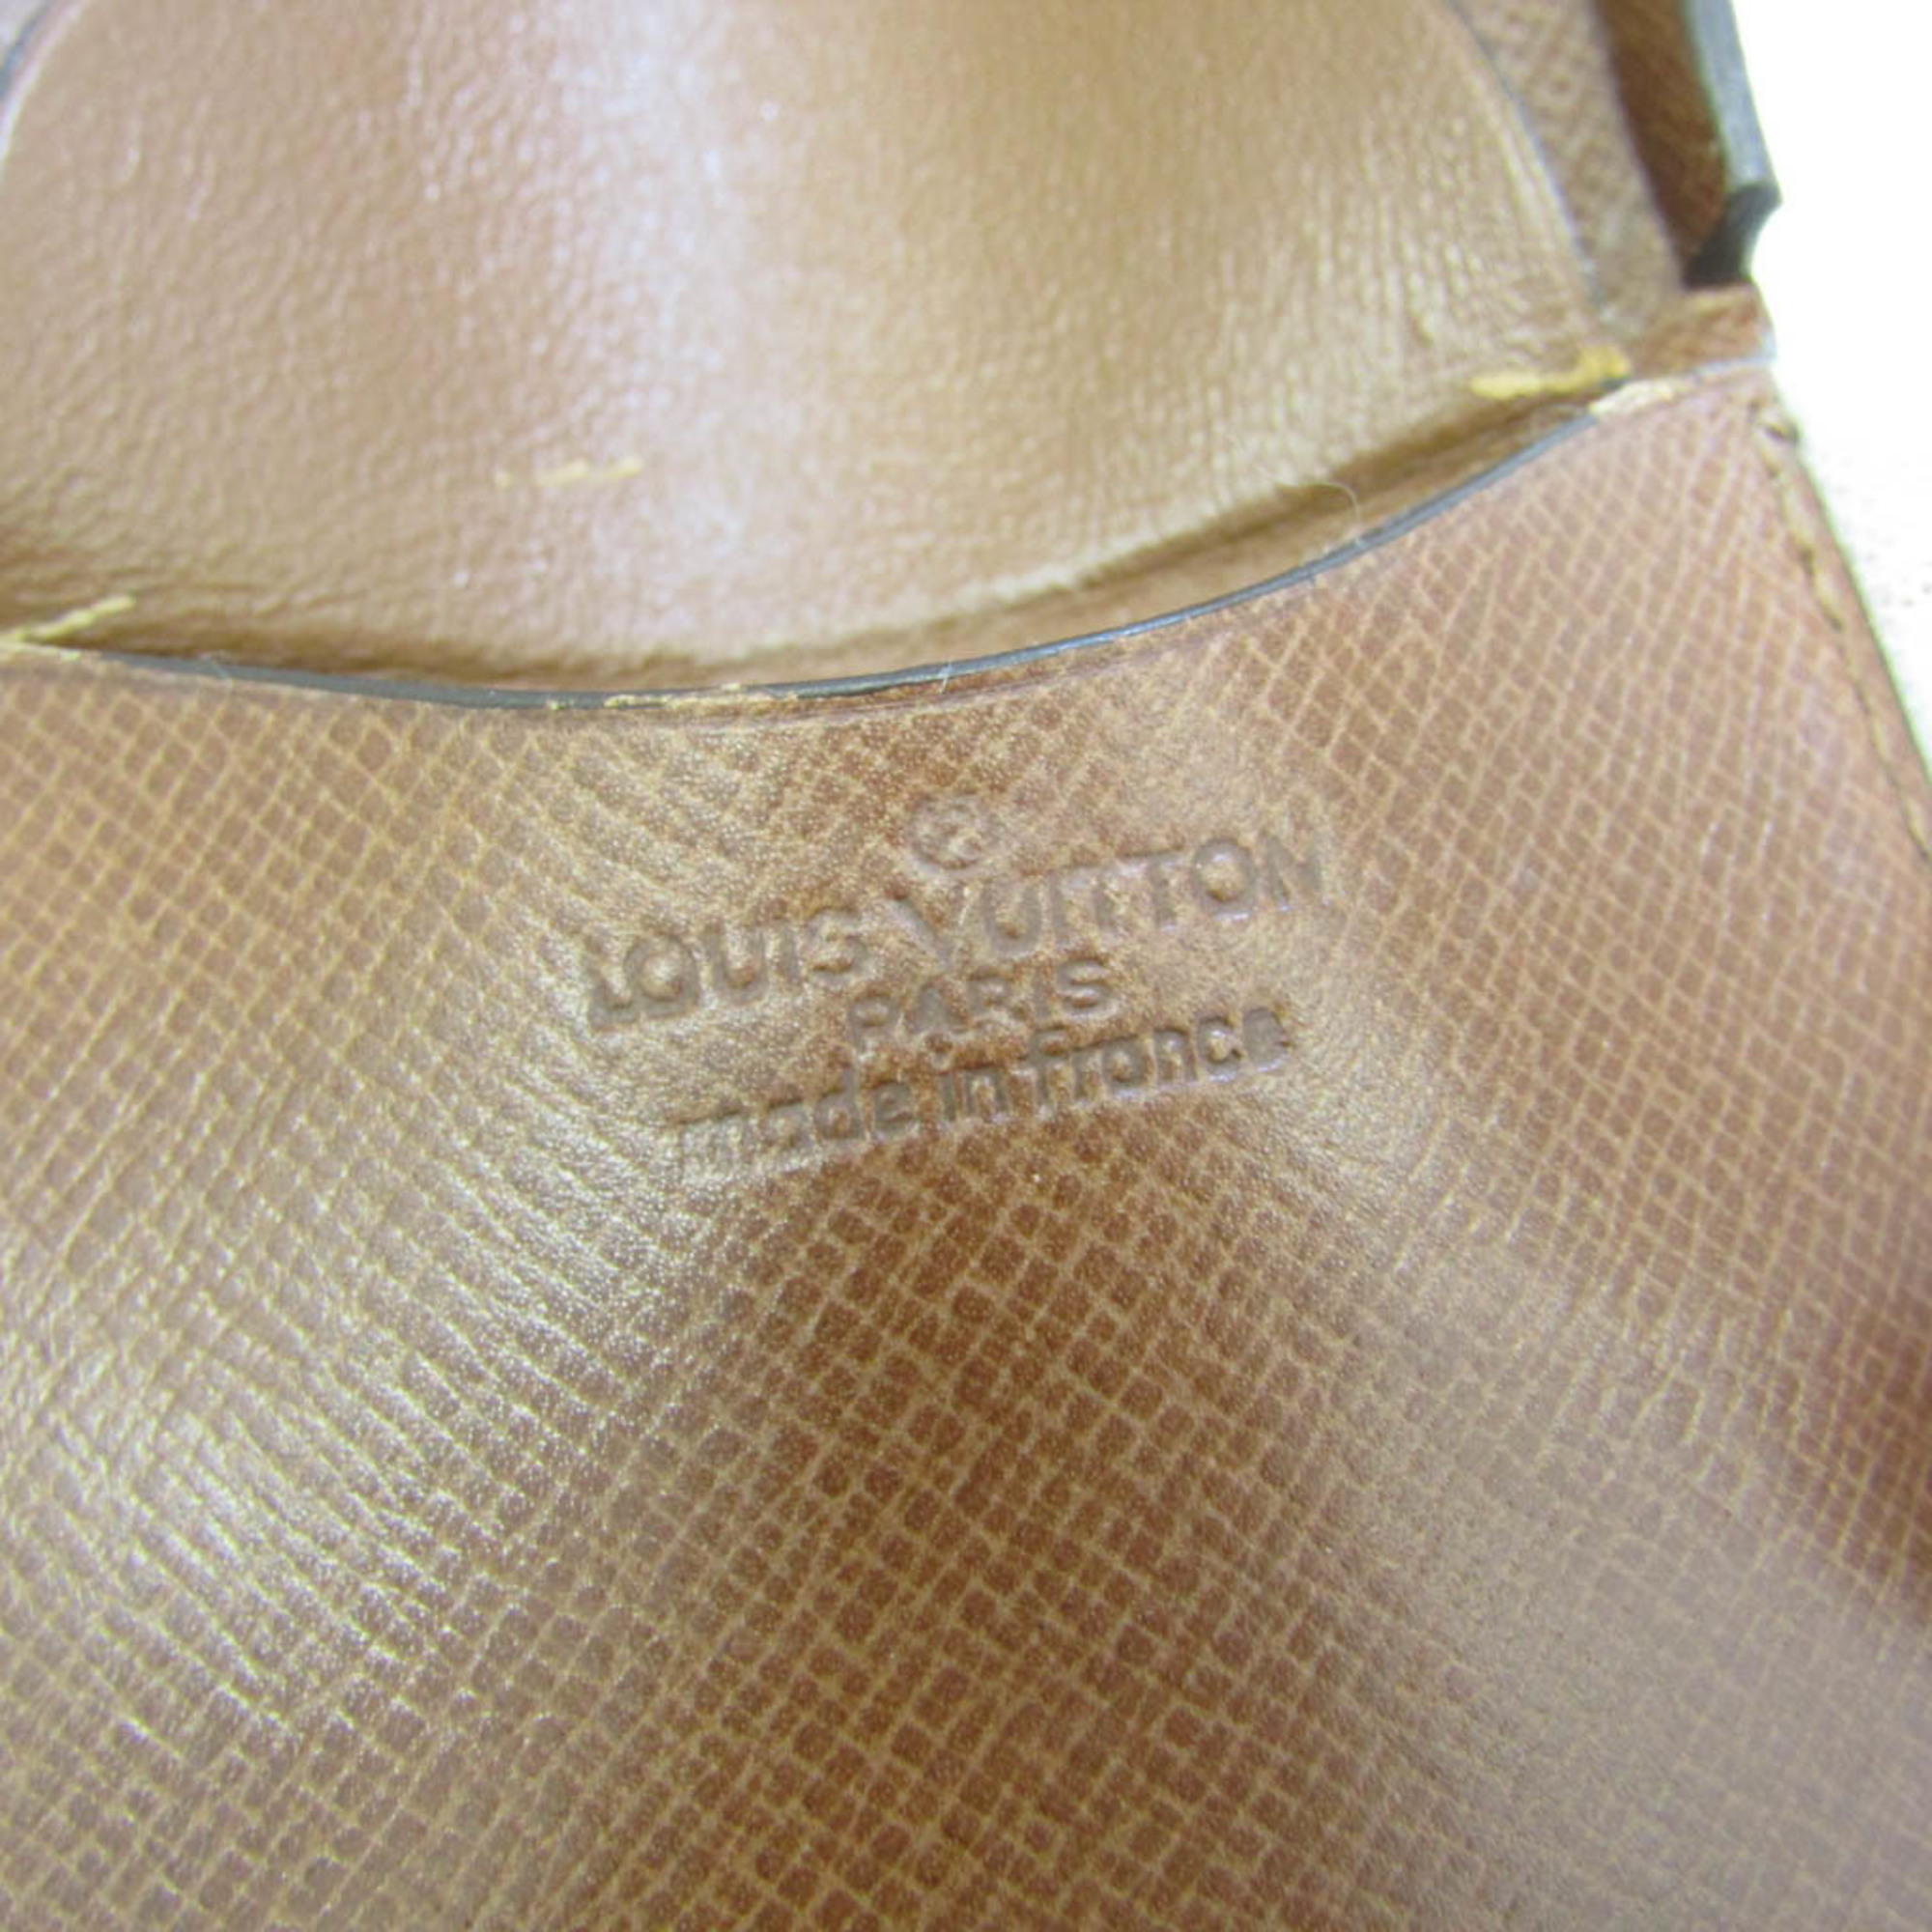 ルイ・ヴィトン(Louis Vuitton) モノグラム ポルトモネ・キュベット M61960 メンズ,レディース モノグラム 小銭入れ・コインケース モノグラム